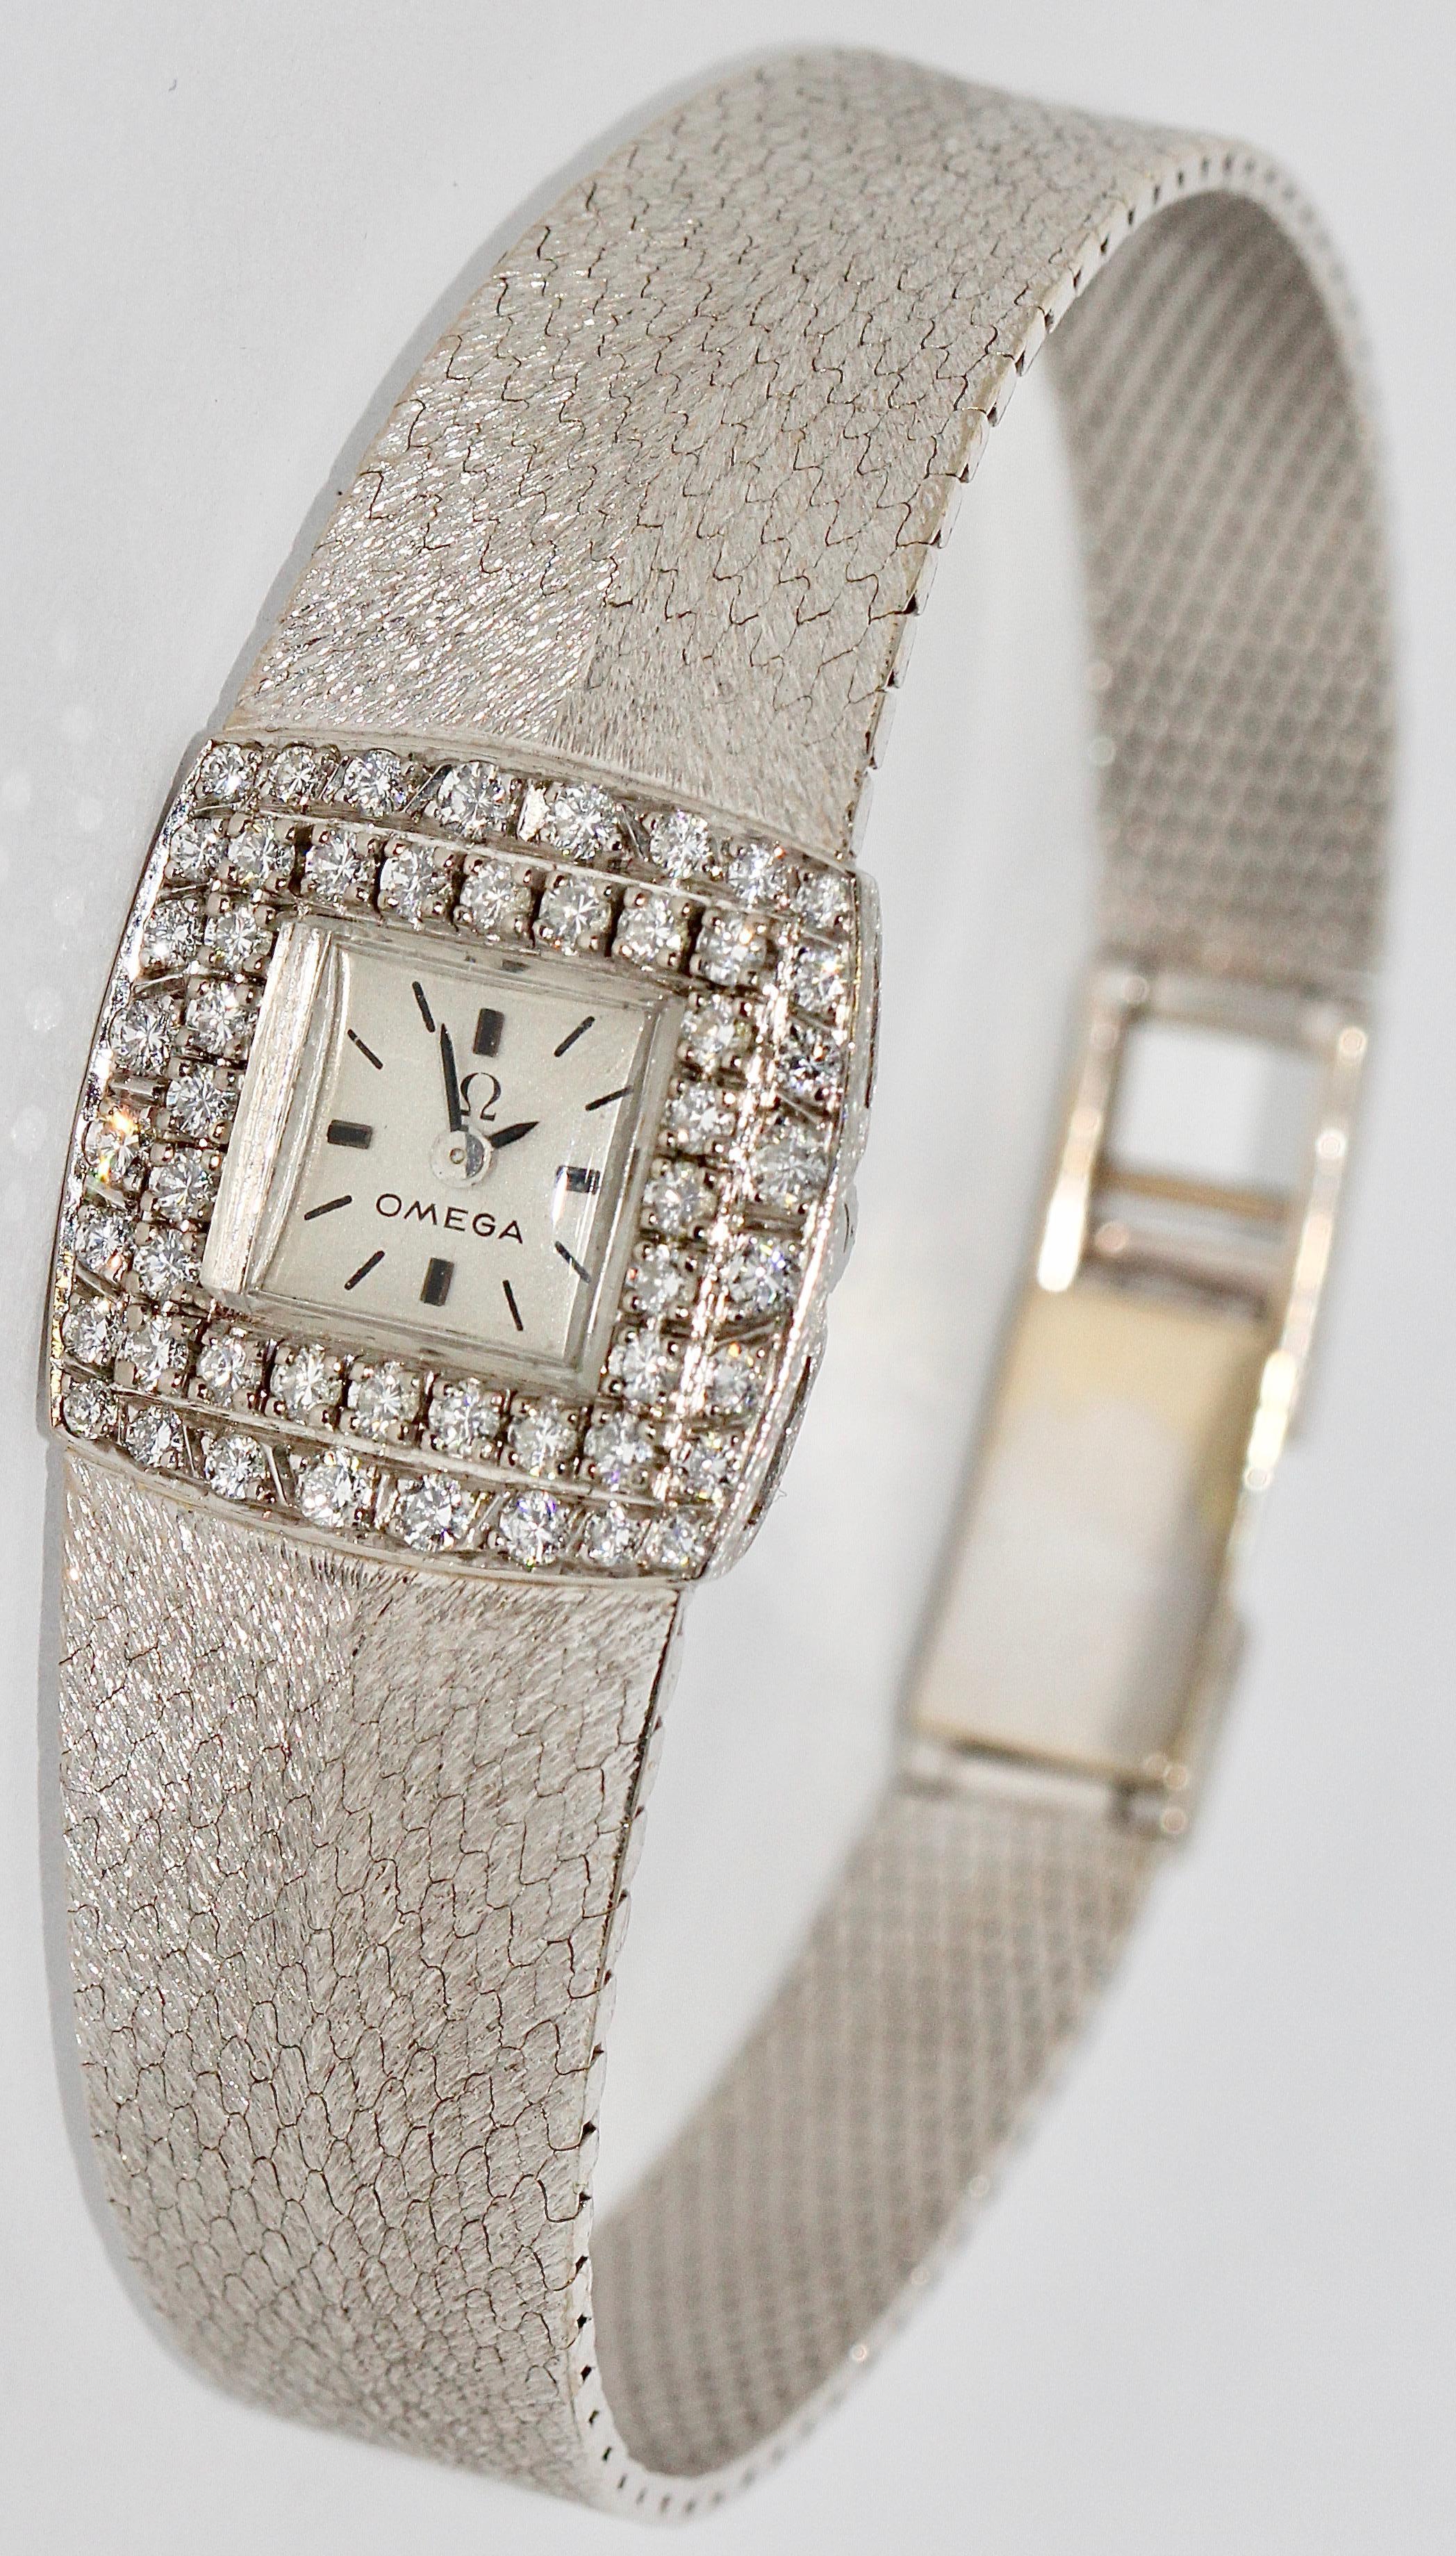 Montre-bracelet Omega pour dames, en or blanc 18 carats, avec diamants.

Mouvement mécanique (vent manuel).
Très bon état.

Modèle très rare.

Certificat d'authenticité inclus.